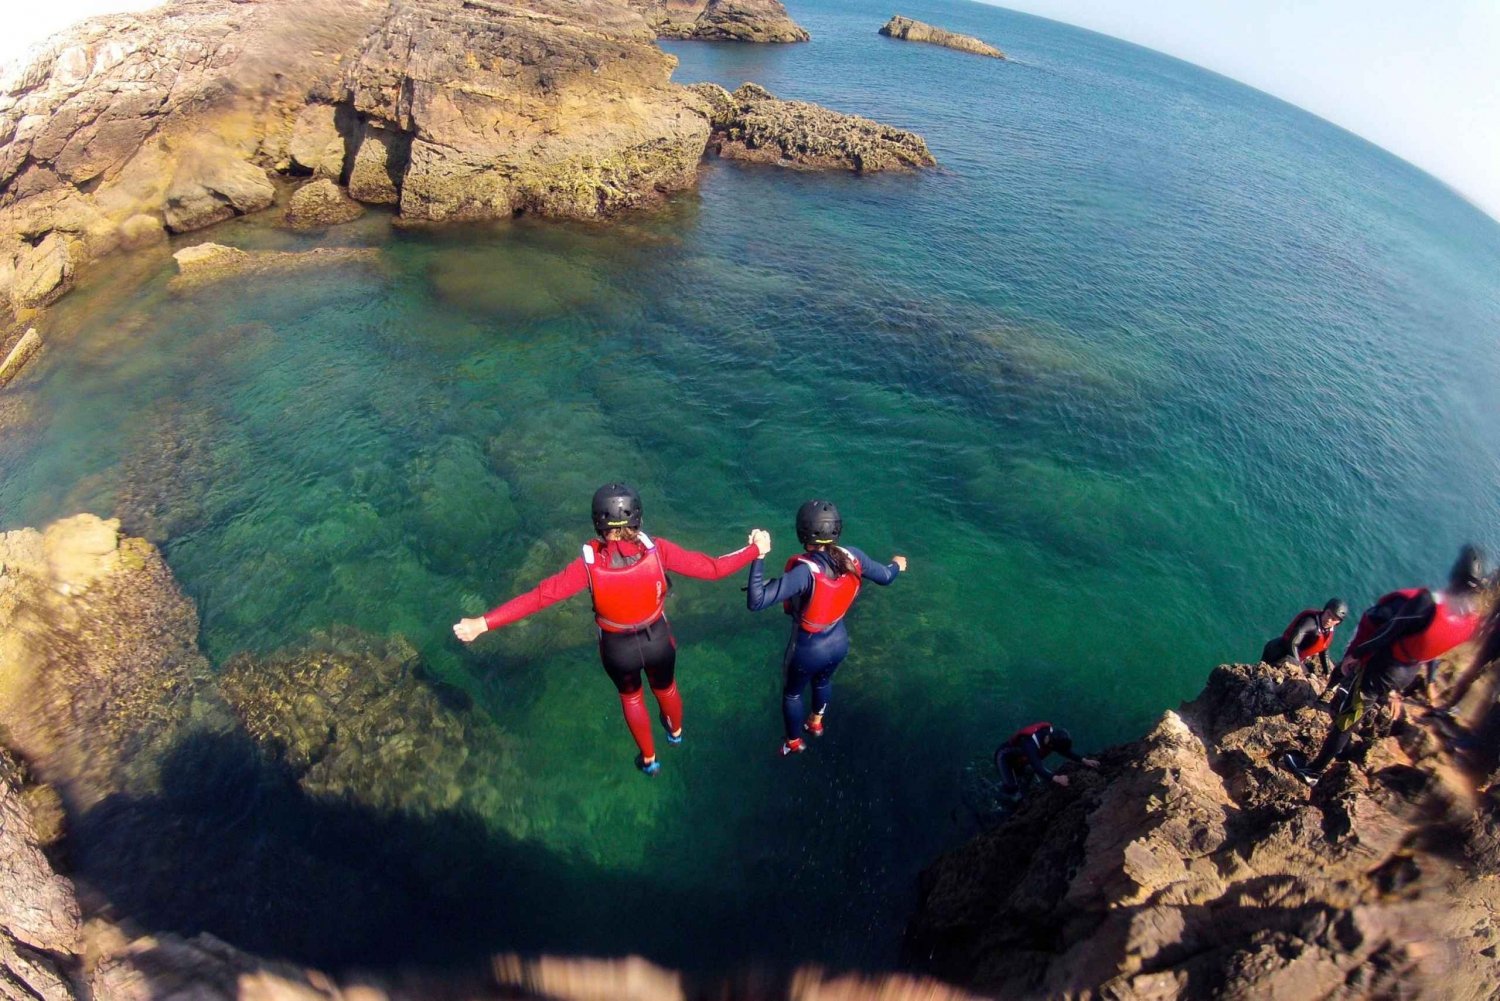 Coasteering Algarve: Skacz z klifu, pływaj i wspinaj się w Sagres